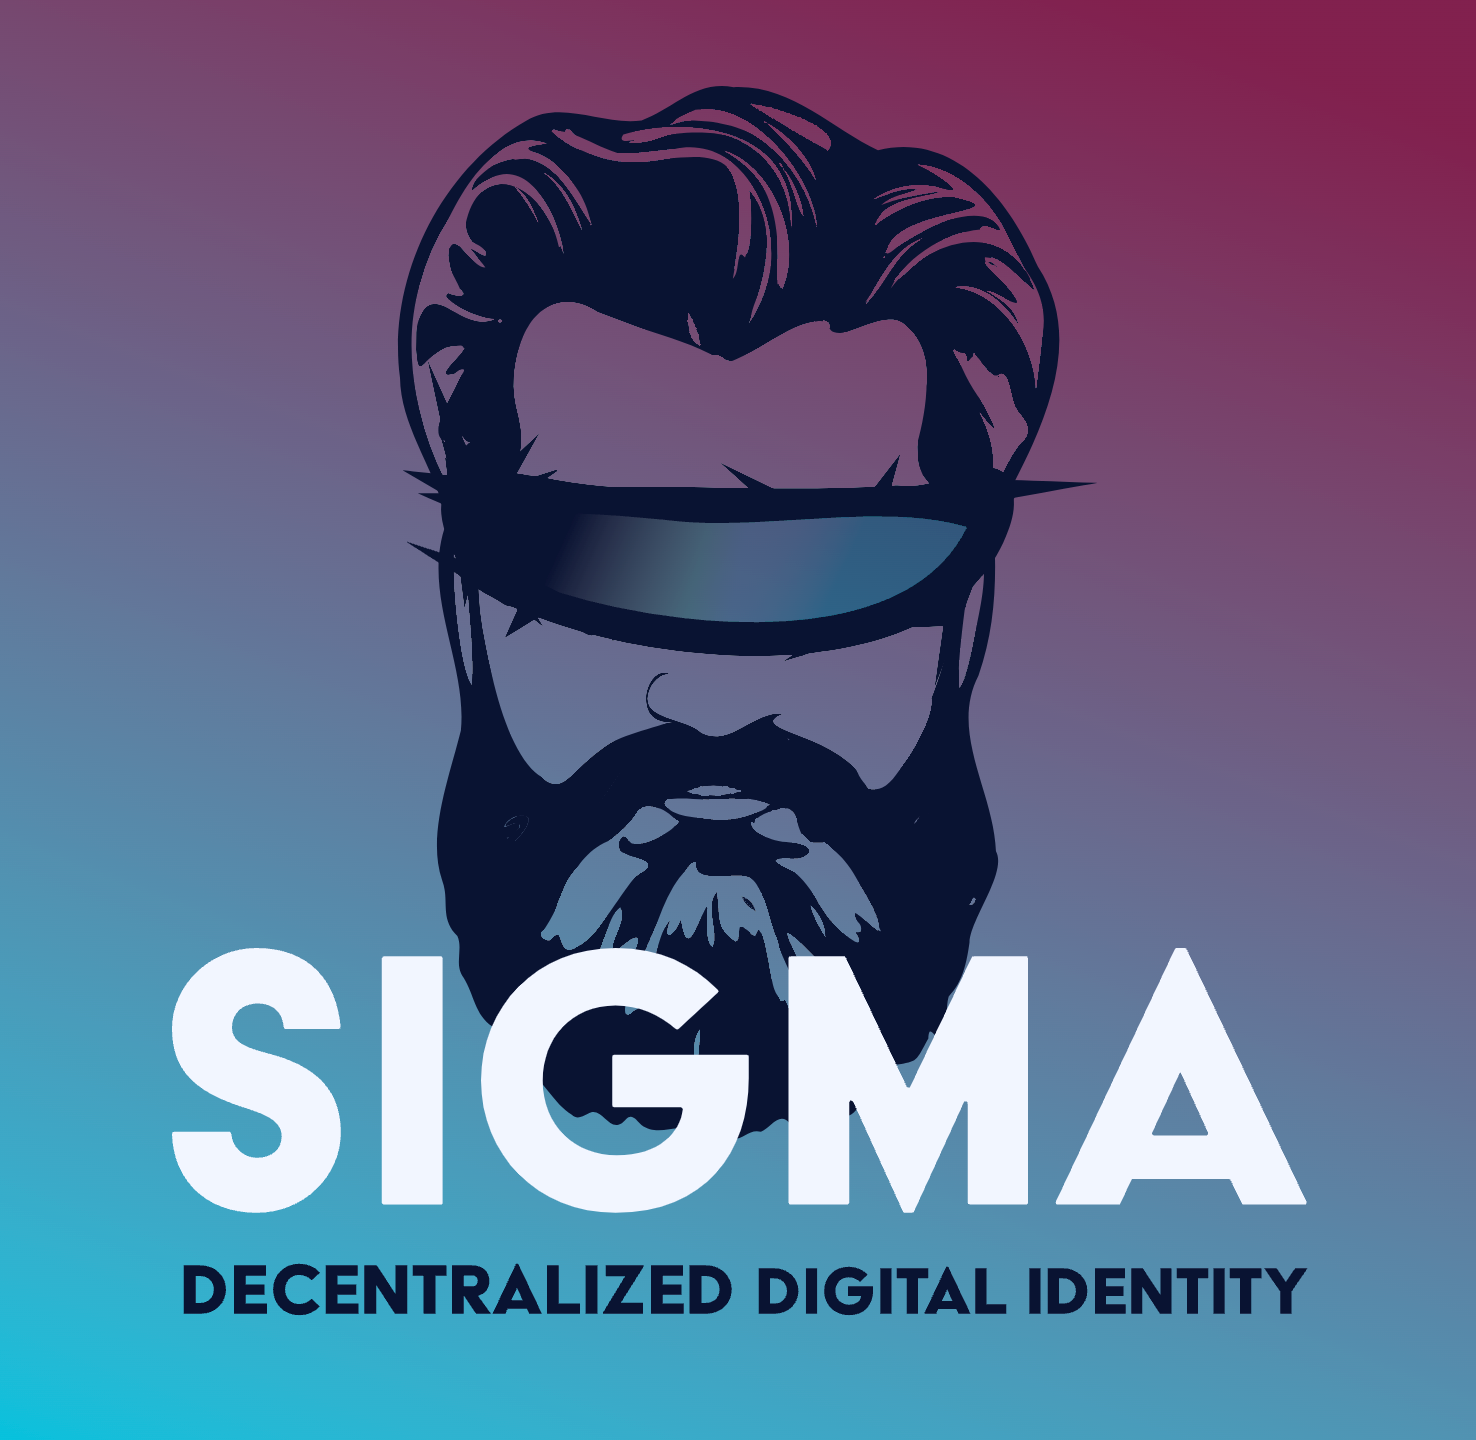 SIGMA decentralized digital identity